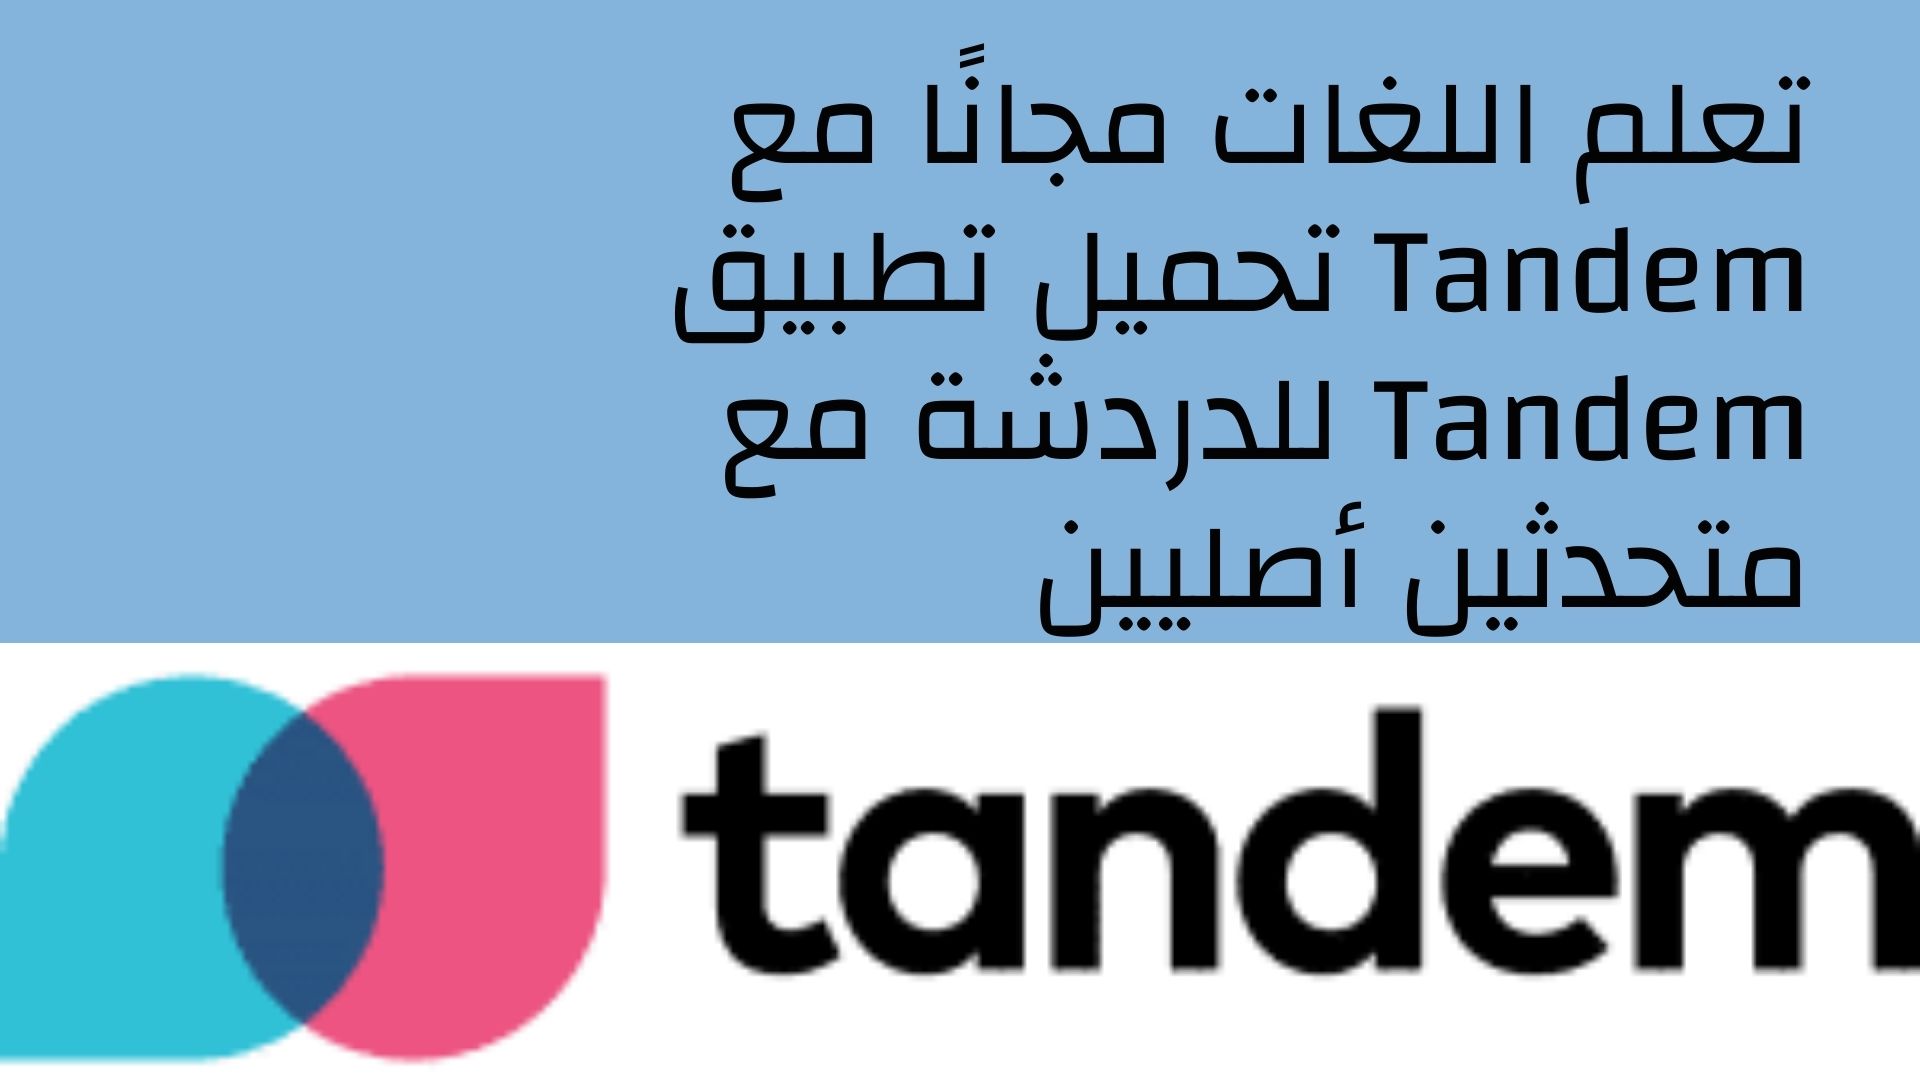 تعلم اللغات مجانًا مع Tandem تحميل تطبيق Tandem للدردشة مع متحدثين أصليين